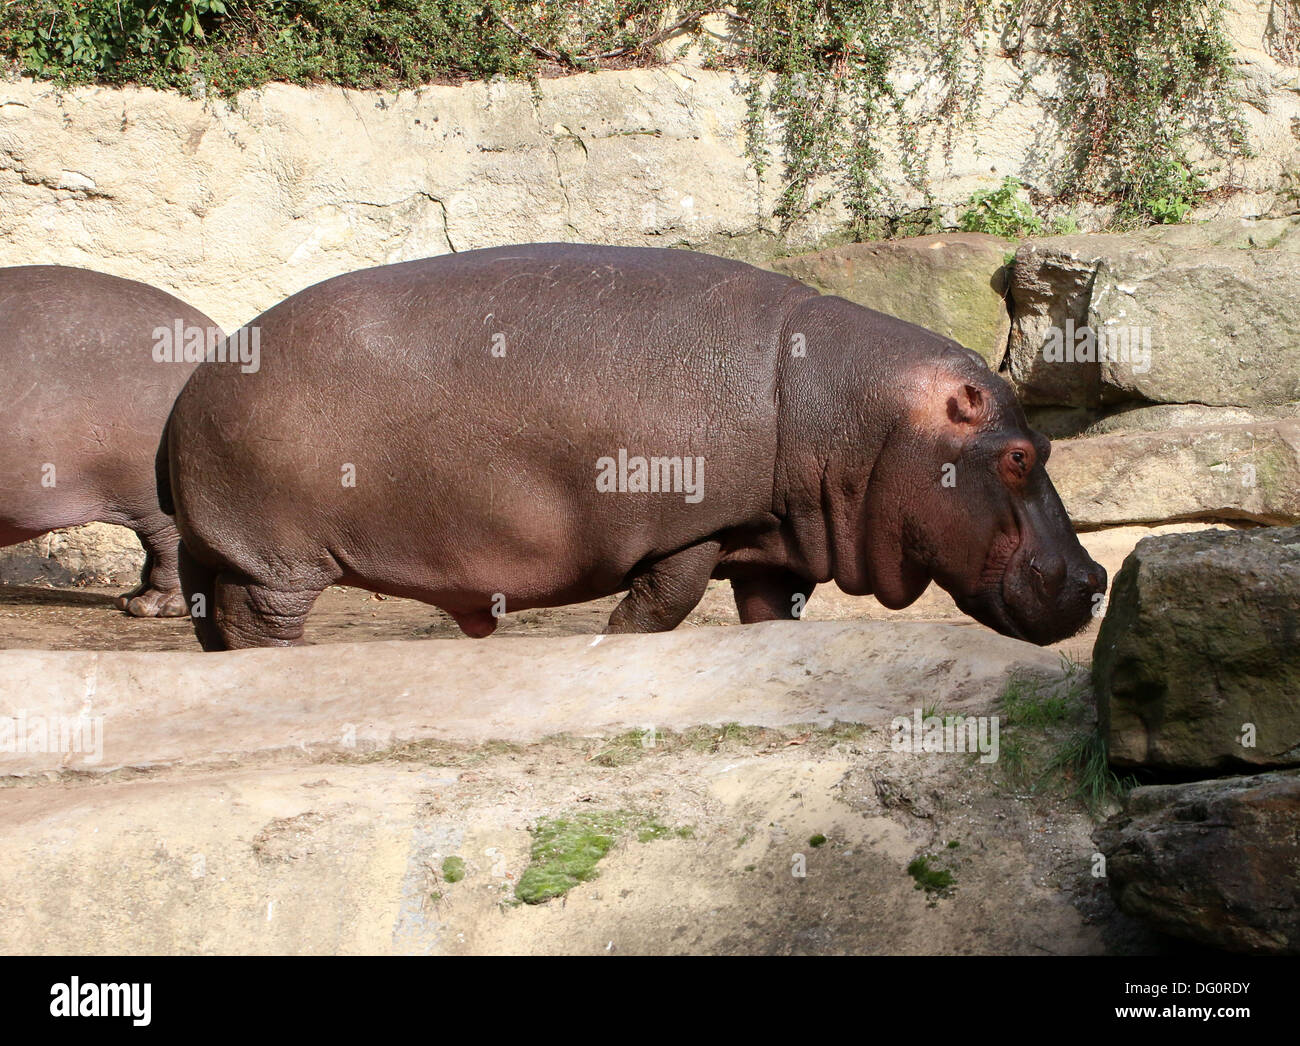 Hippo (Hippopotamus amphibius) close-up in profile Stock Photo